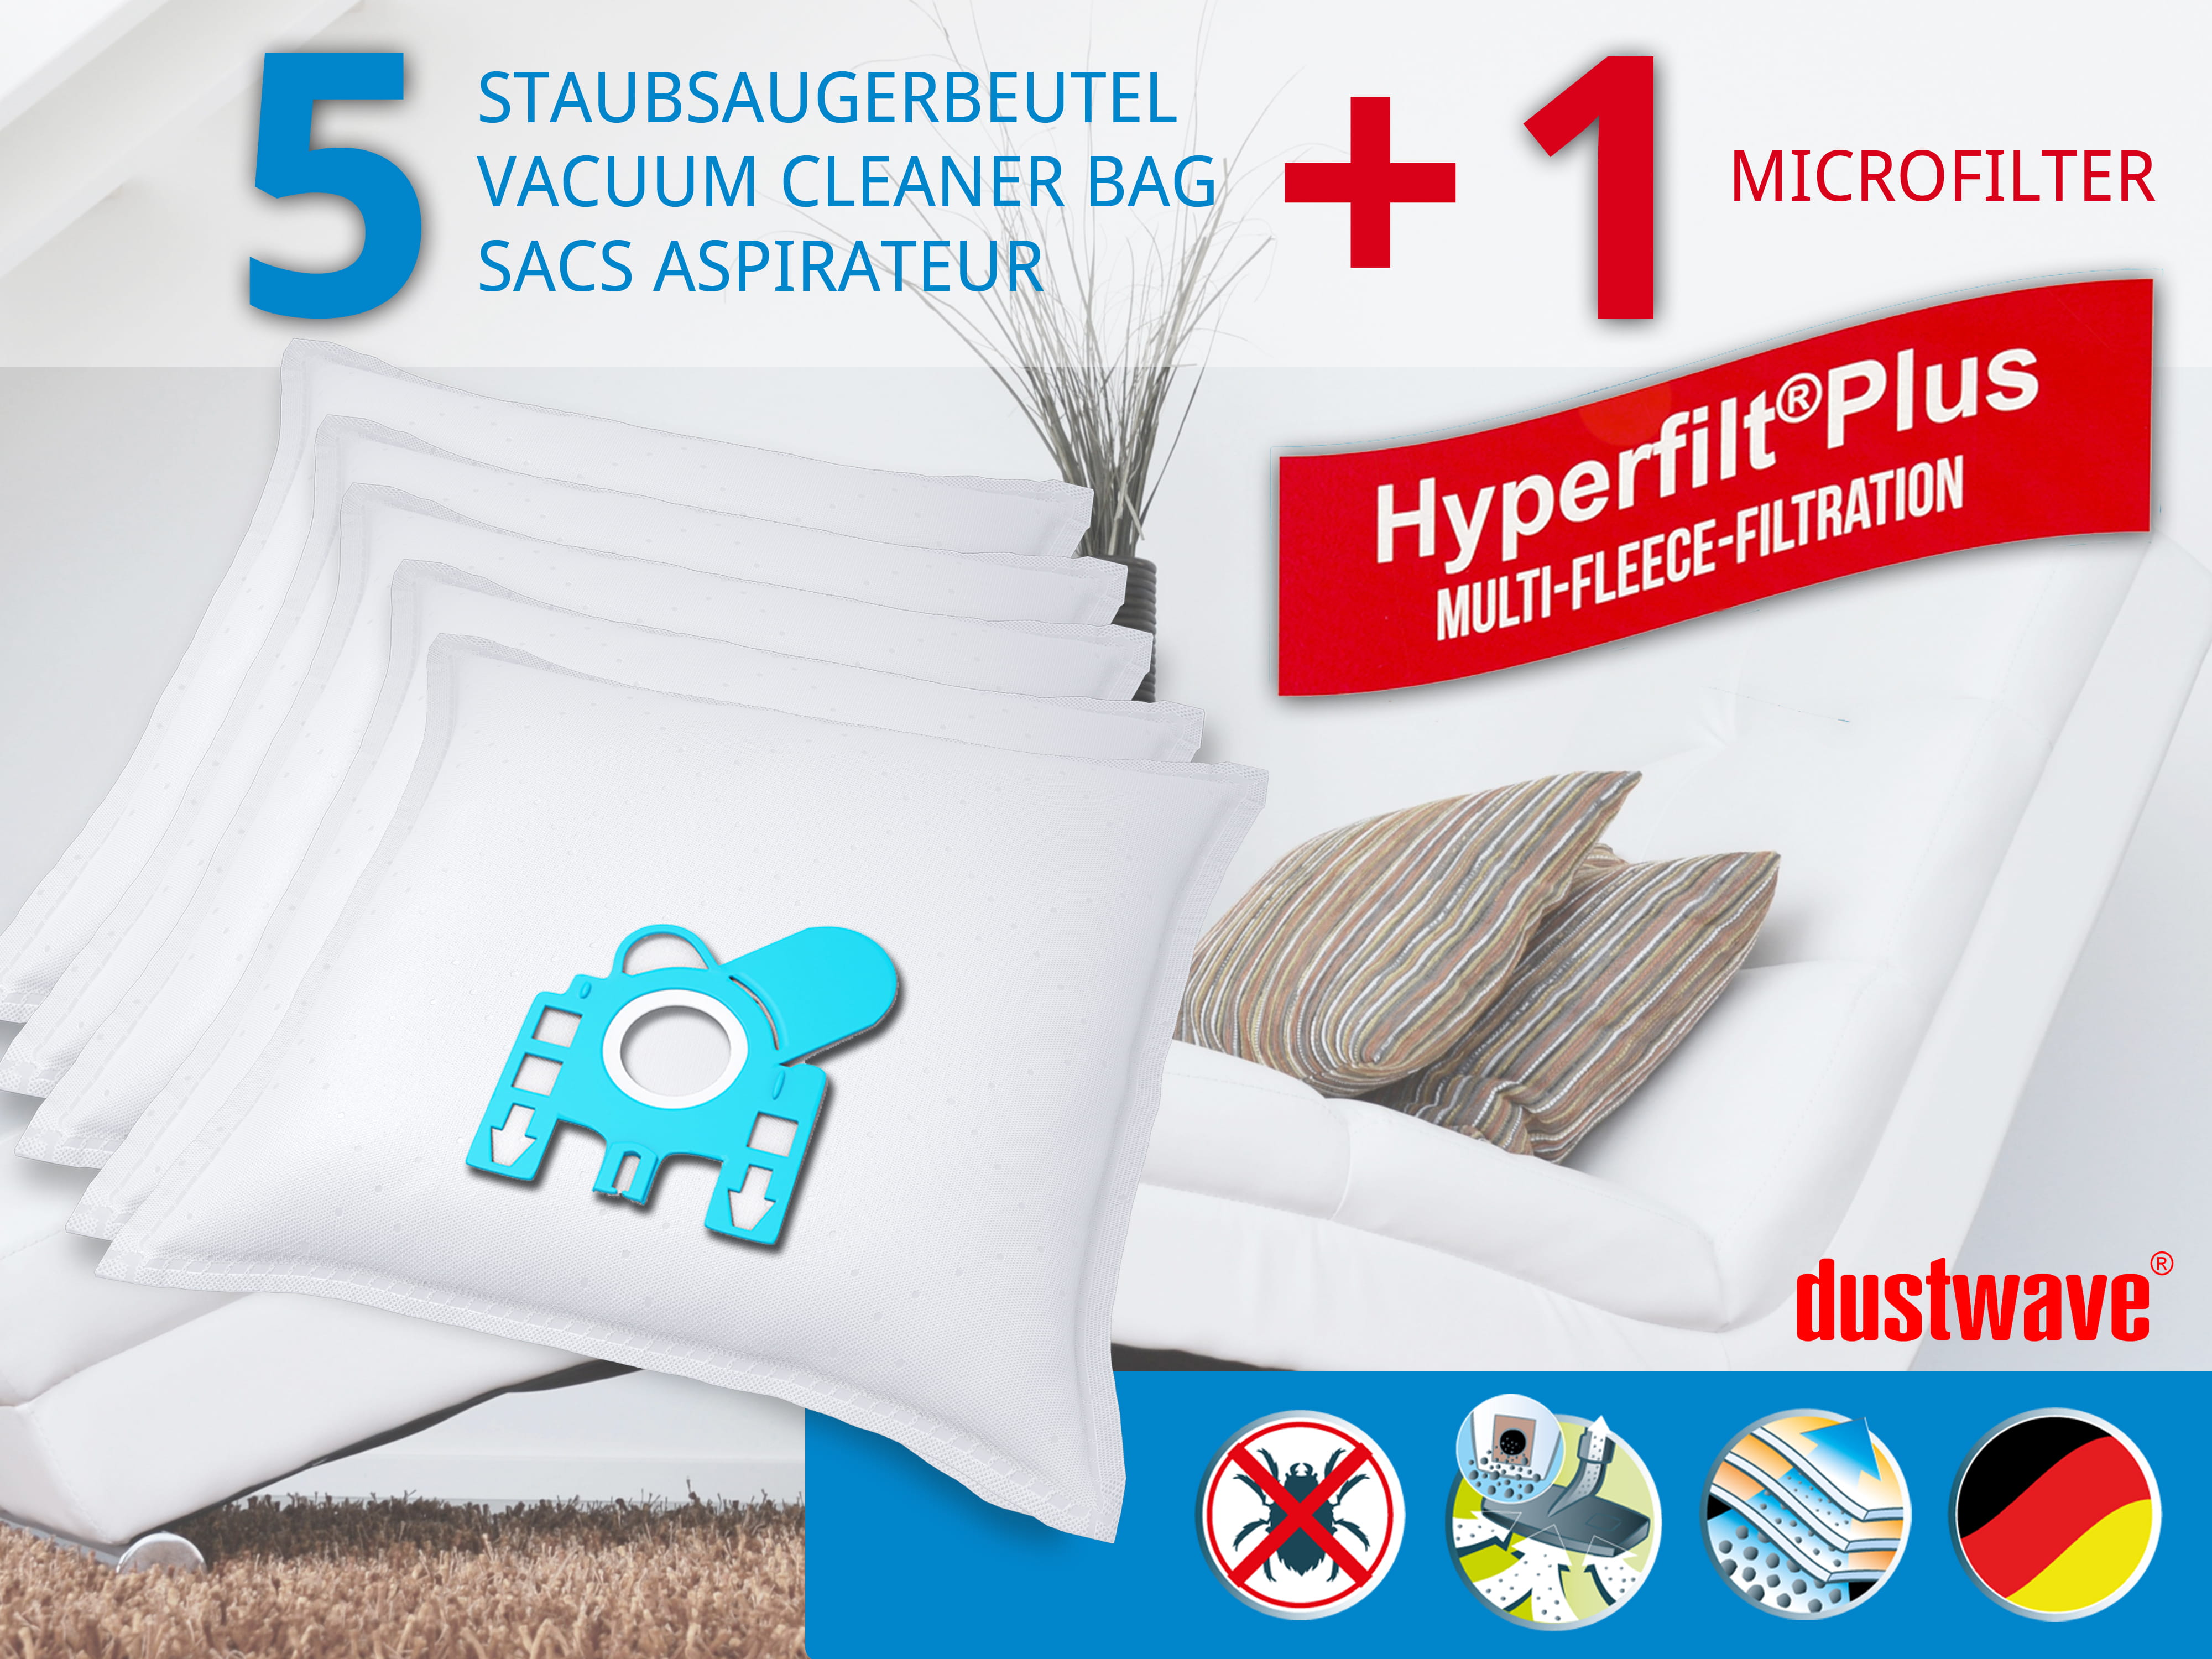 Dustwave® 5 Staubsaugerbeutel für Miele Solaris Electro Plus - hocheffizient, mehrlagiges Mikrovlies mit Hygieneverschluss - Made in Germany